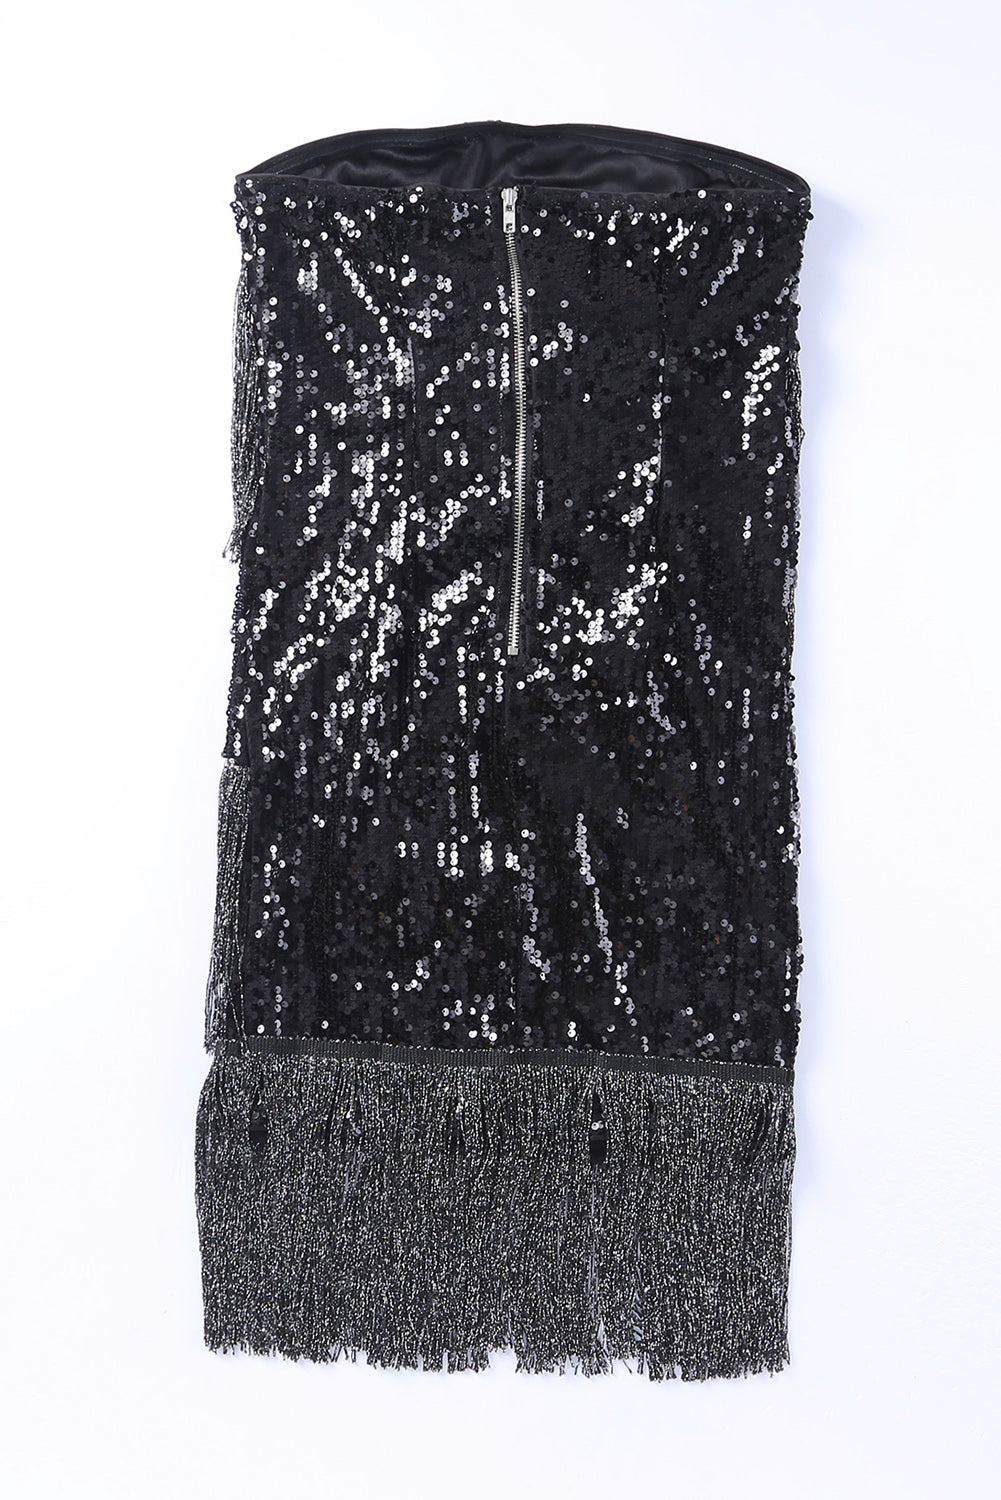 Black Strapless Fringe Skinny Sequin Dress - EBEPEX